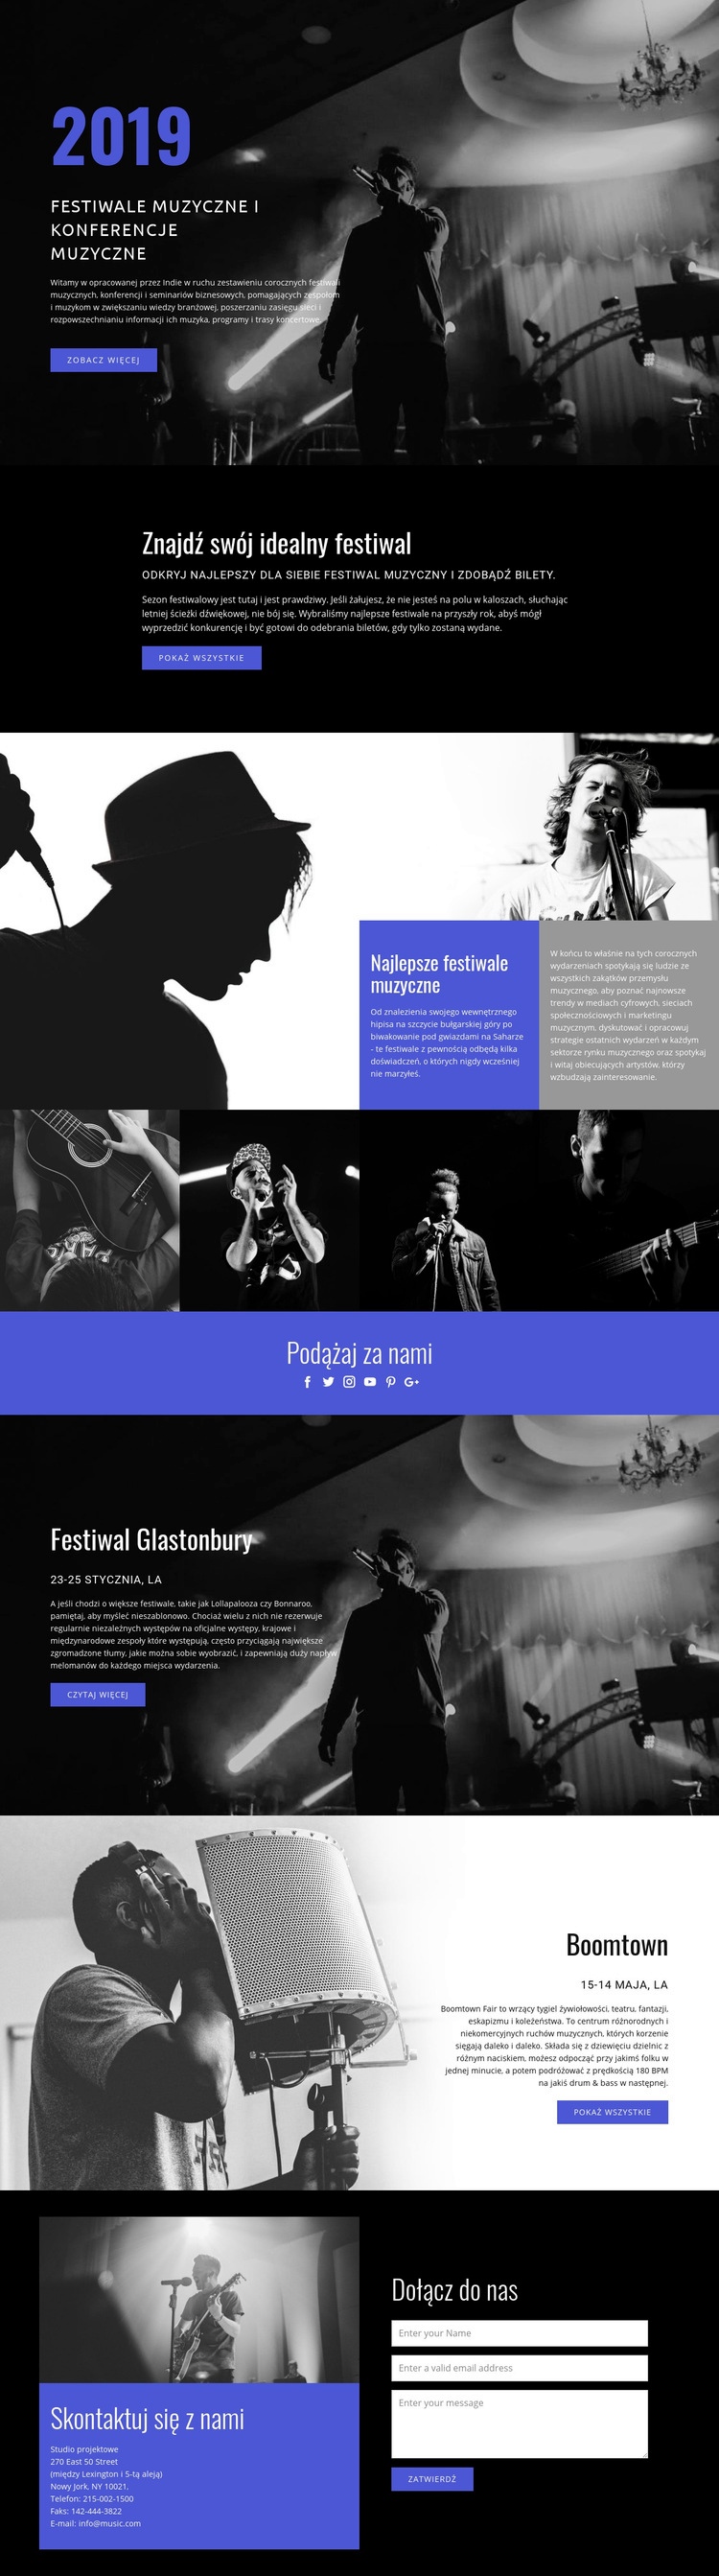 Festiwale muzyczne Makieta strony internetowej